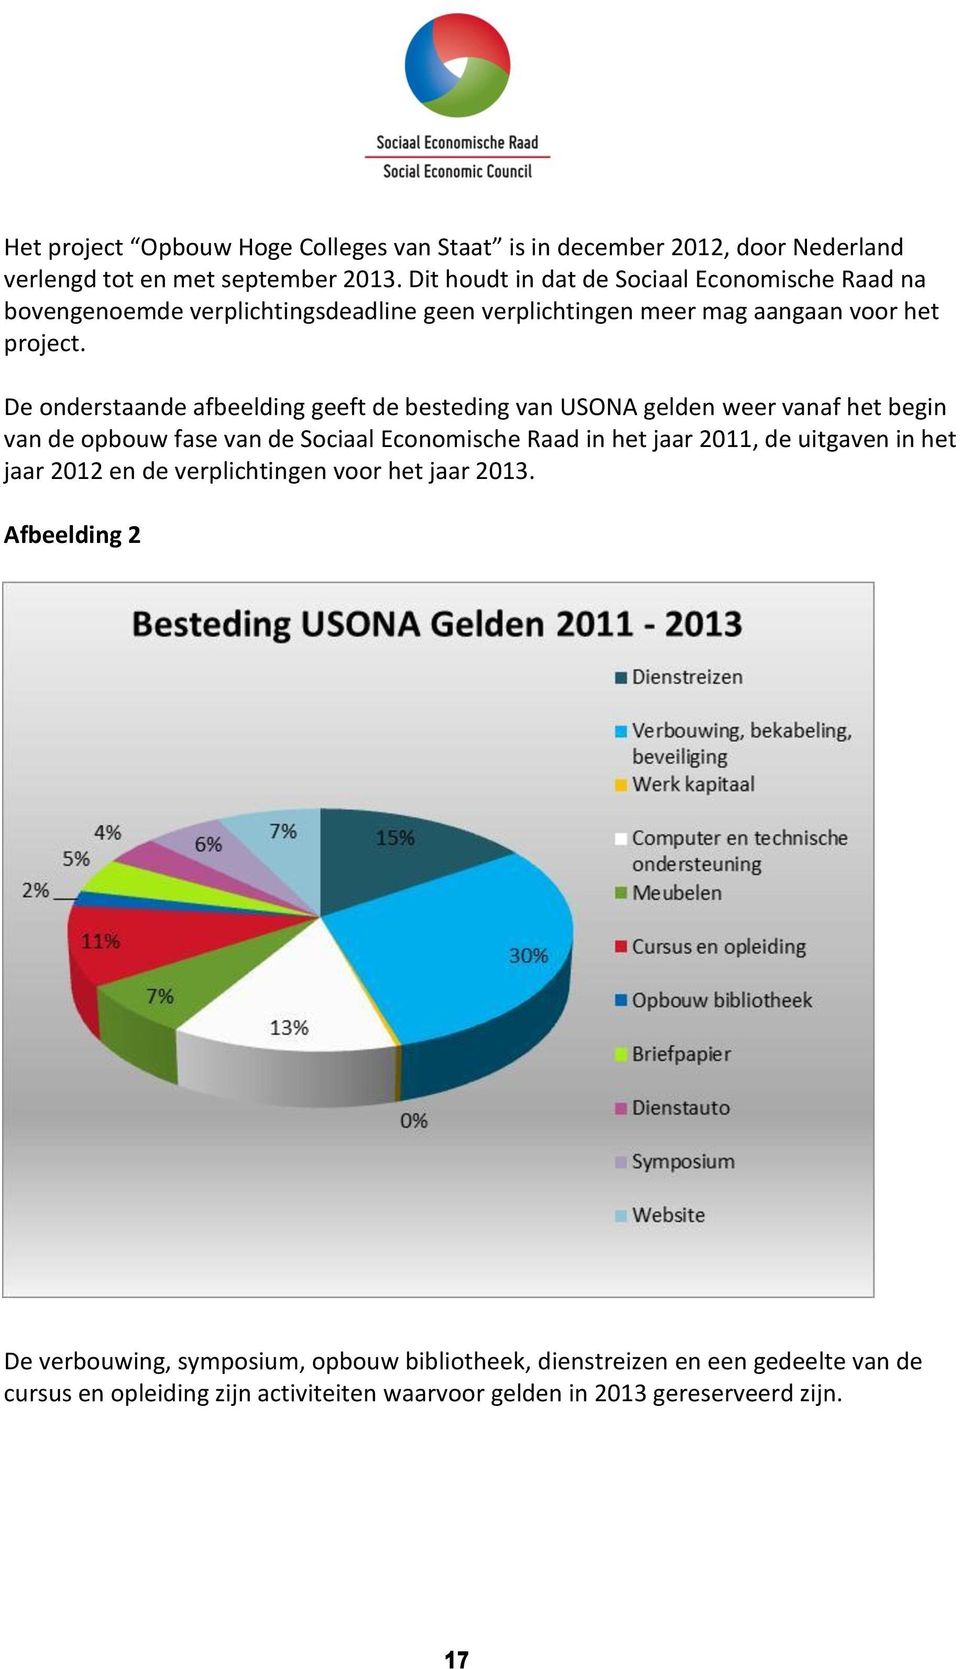 De onderstaande afbeelding geeft de besteding van USONA gelden weer vanaf het begin van de opbouw fase van de Sociaal Economische Raad in het jaar 2011, de